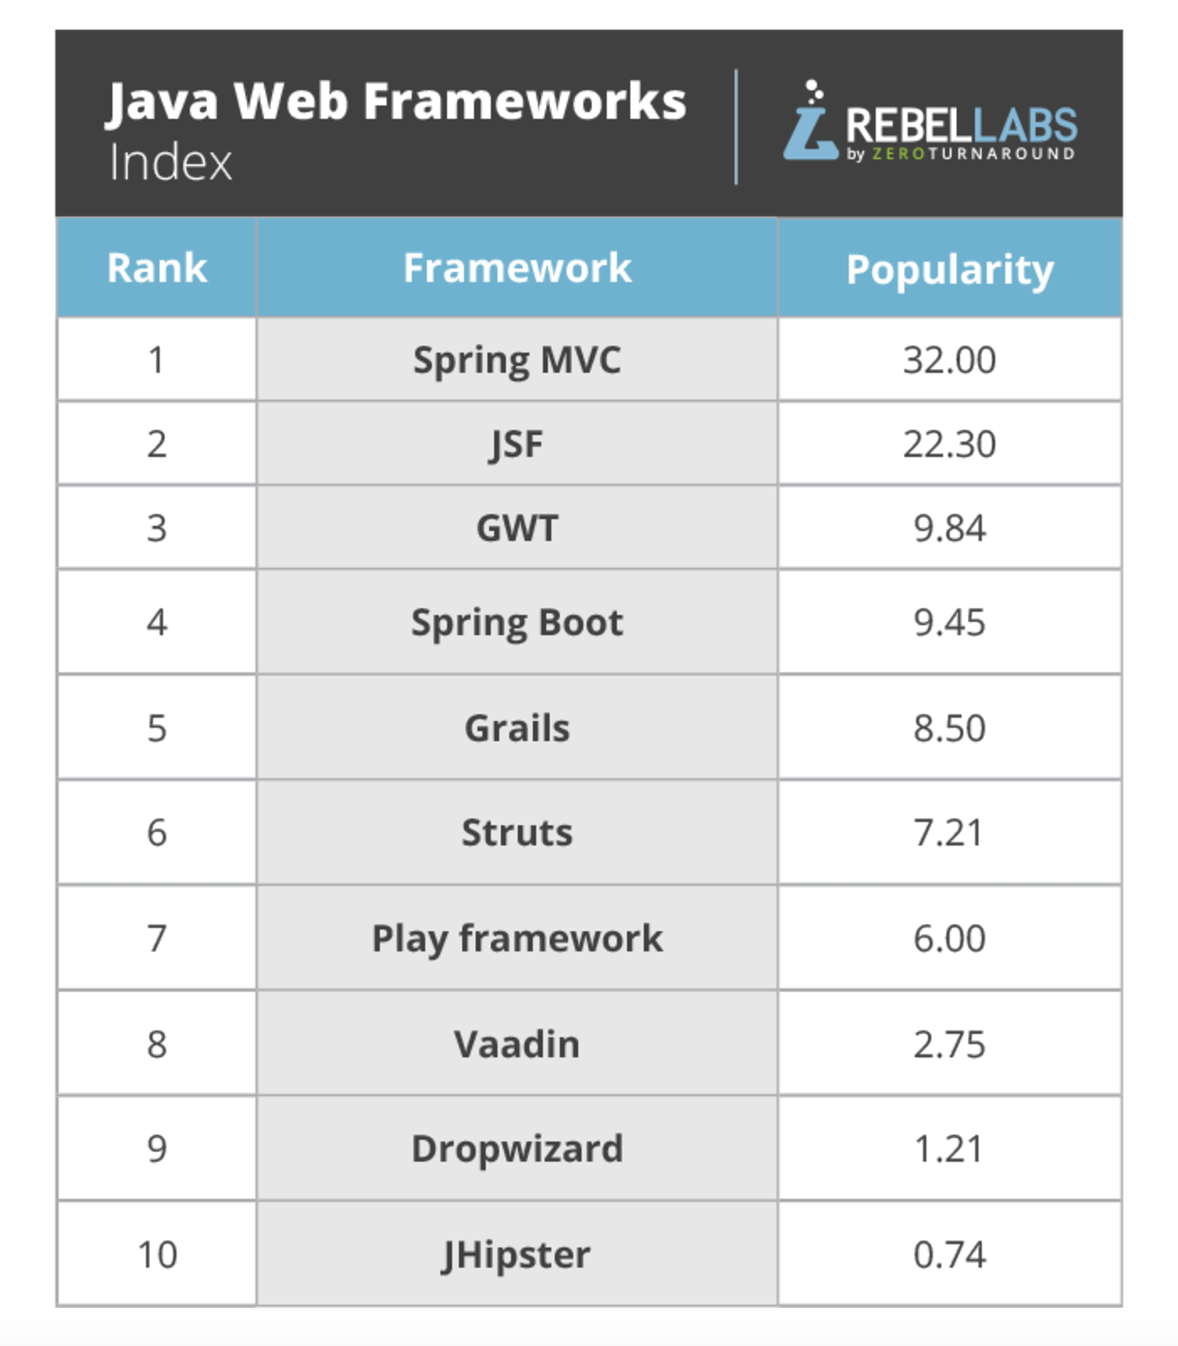 Java Web Frameworks Index by RebelLabs in 2017